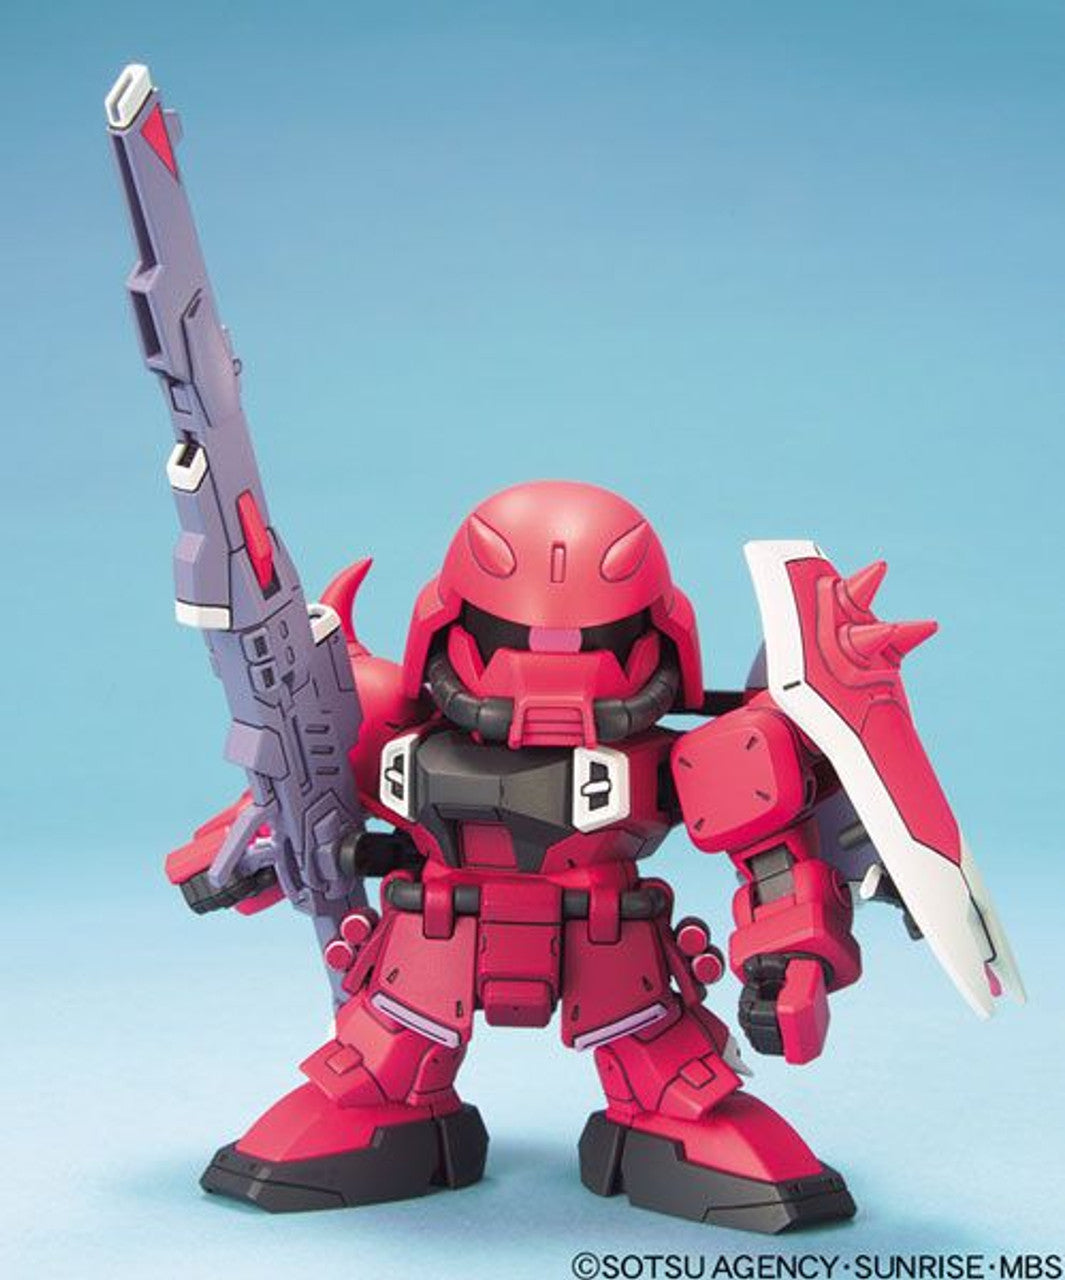 SD BB Senshi - Gunner Zaku Warrior (Lunamaria Hawke Custom)